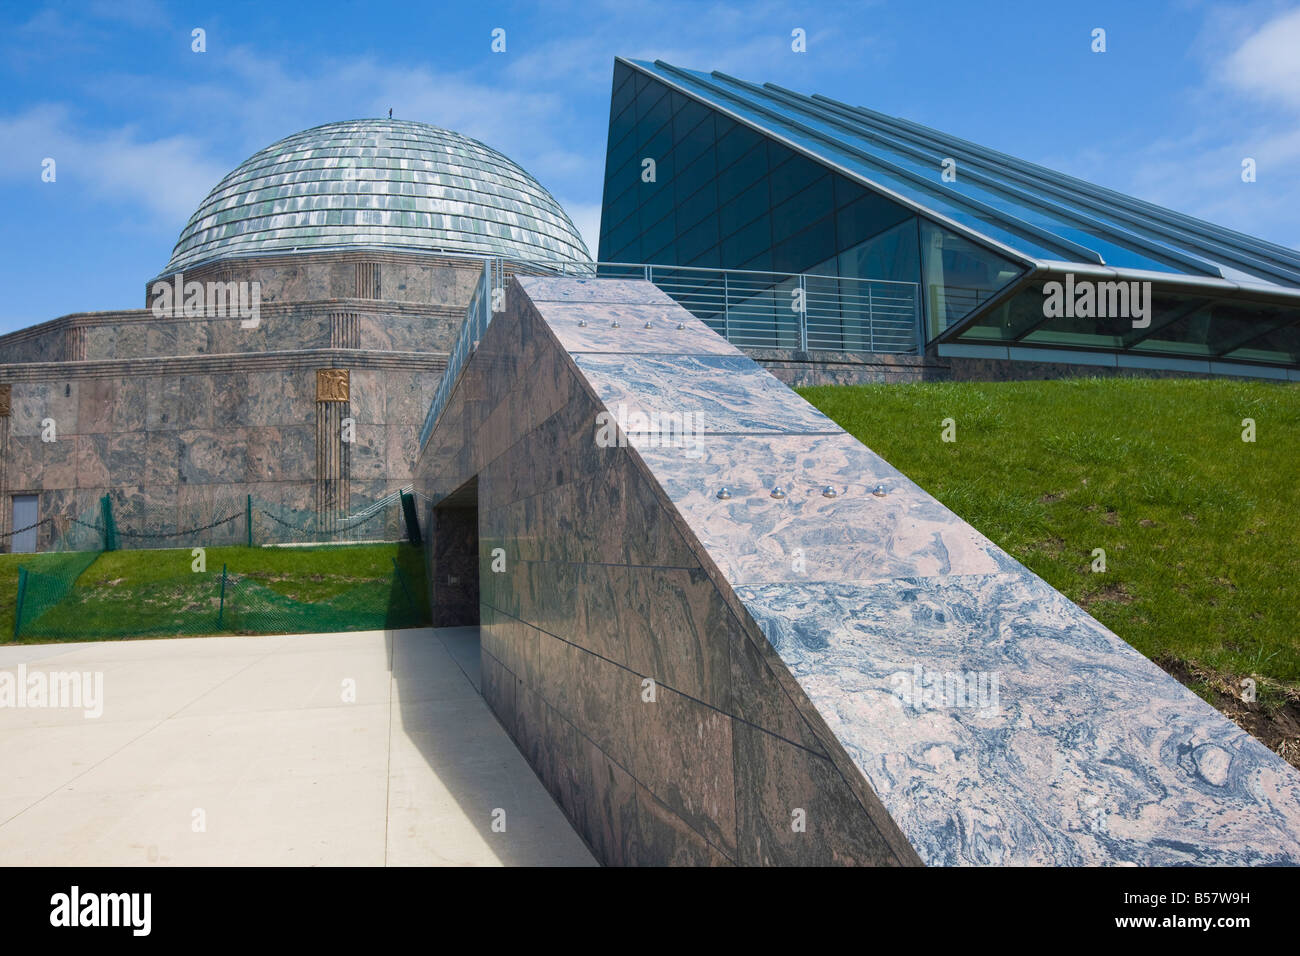 Das Adler Planetarium, Chicago, Illinois, Vereinigte Staaten von Amerika, Nordamerika Stockfoto